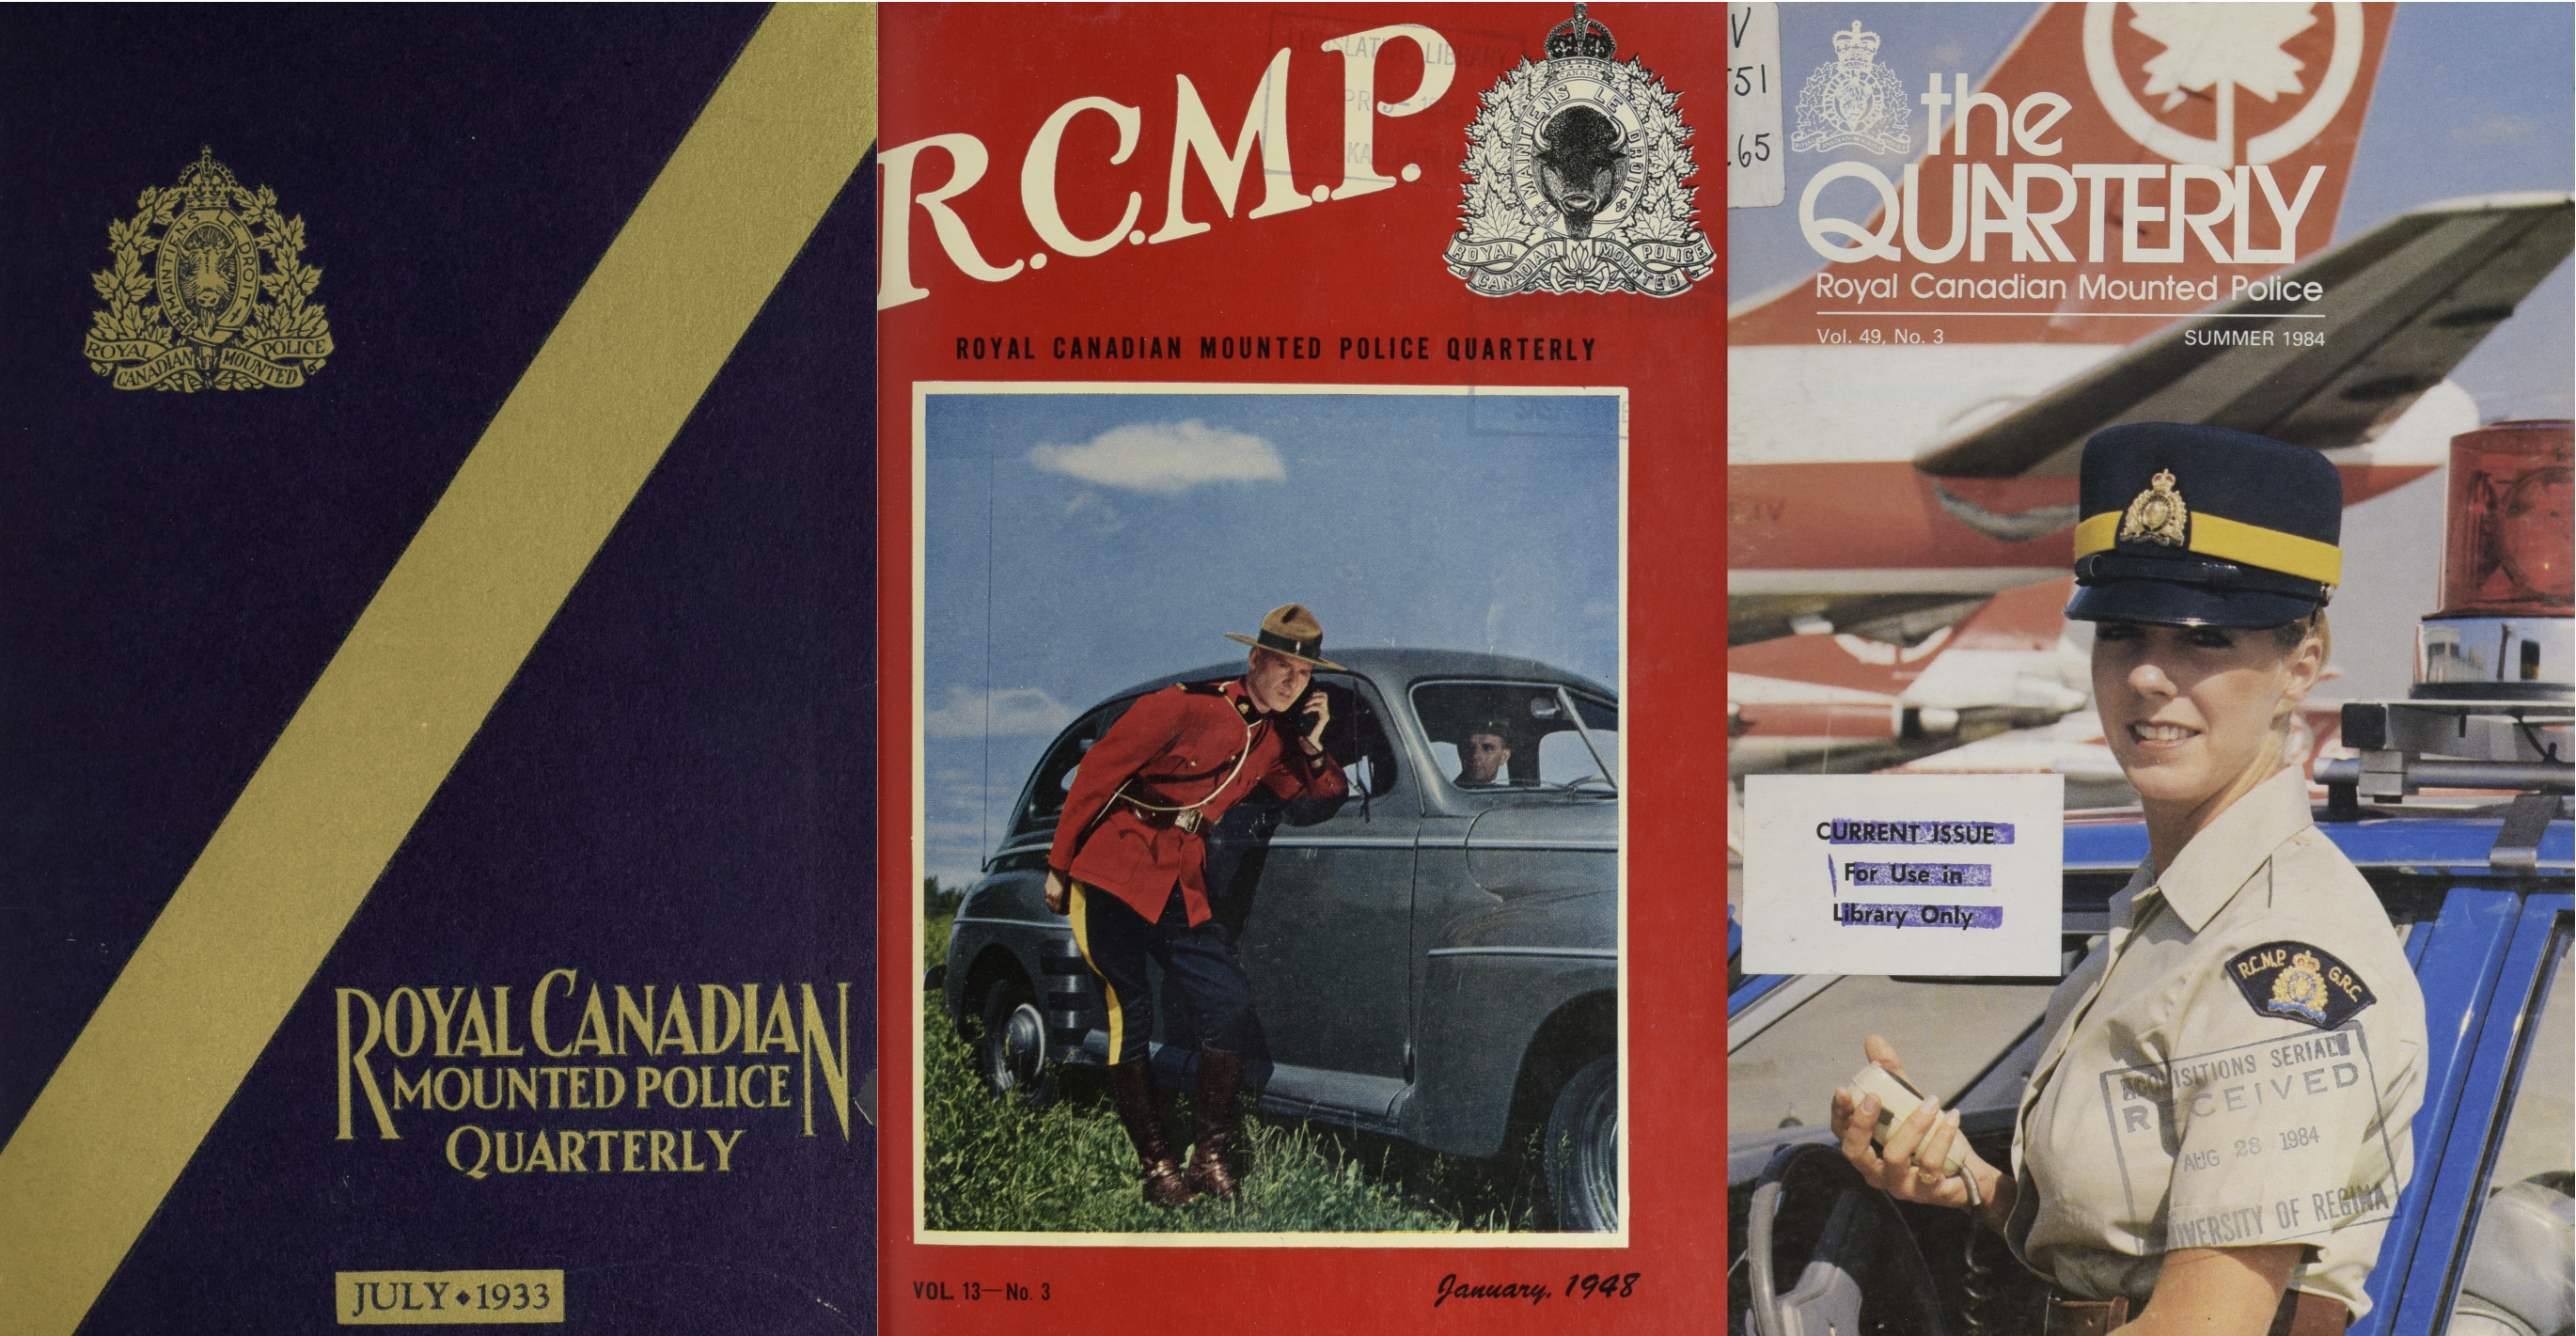 Trois couvertures de la RCMP Quarterly, dont une couverture bleu et or de 1933, une couverture avec une photo d'un officier utilisant un système de radio de voiture de 1948, et une couverture avec une photo d'une femme officier de 1984.